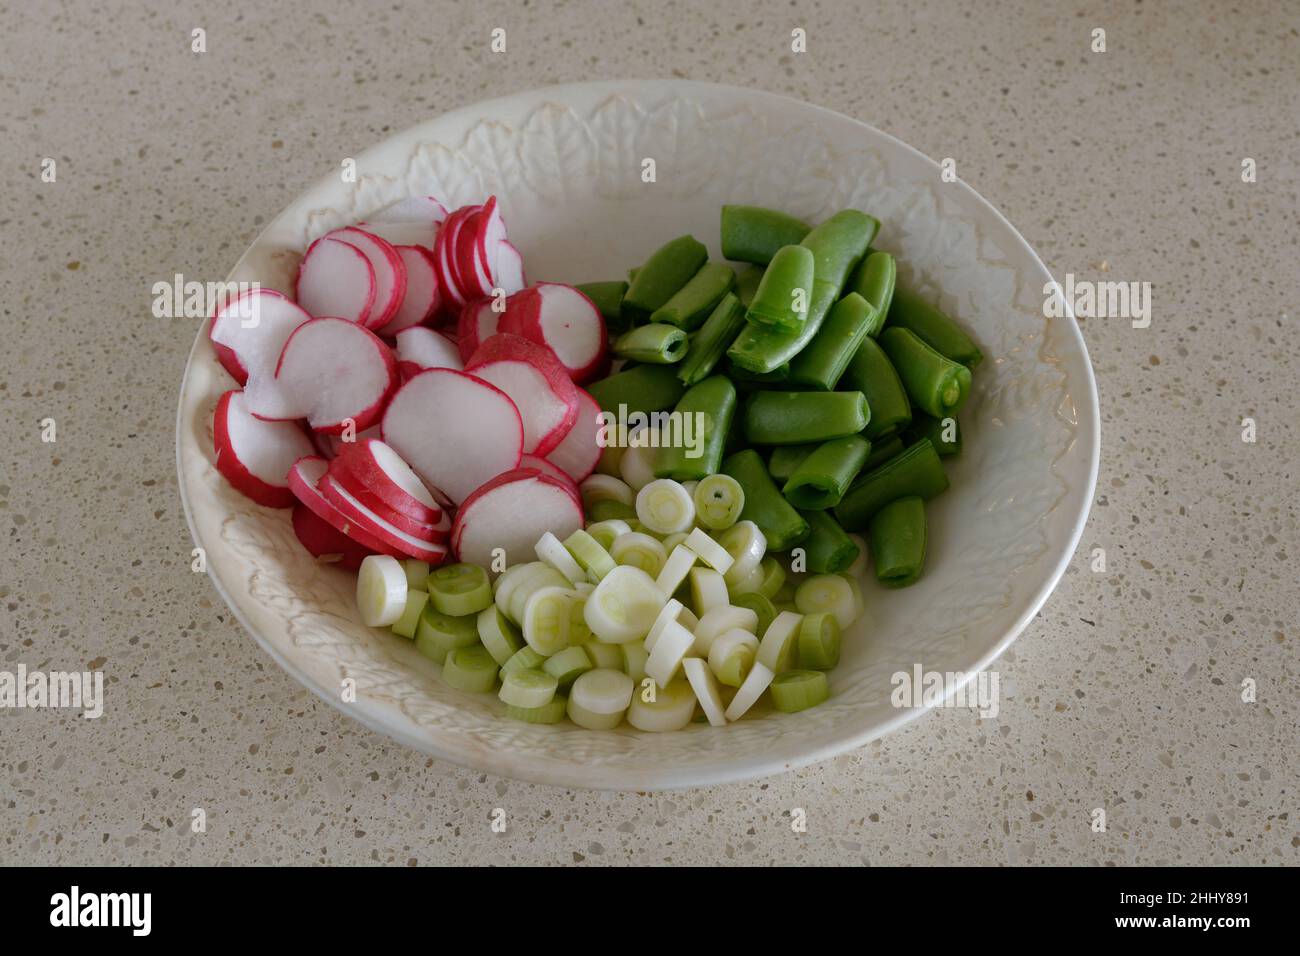 Ingredienti freschi dell'insalata - ravanello, cipolla primaverile, piselli a bottoncino di zucchero tritati in un recipiente bianco su sfondo beige Foto Stock